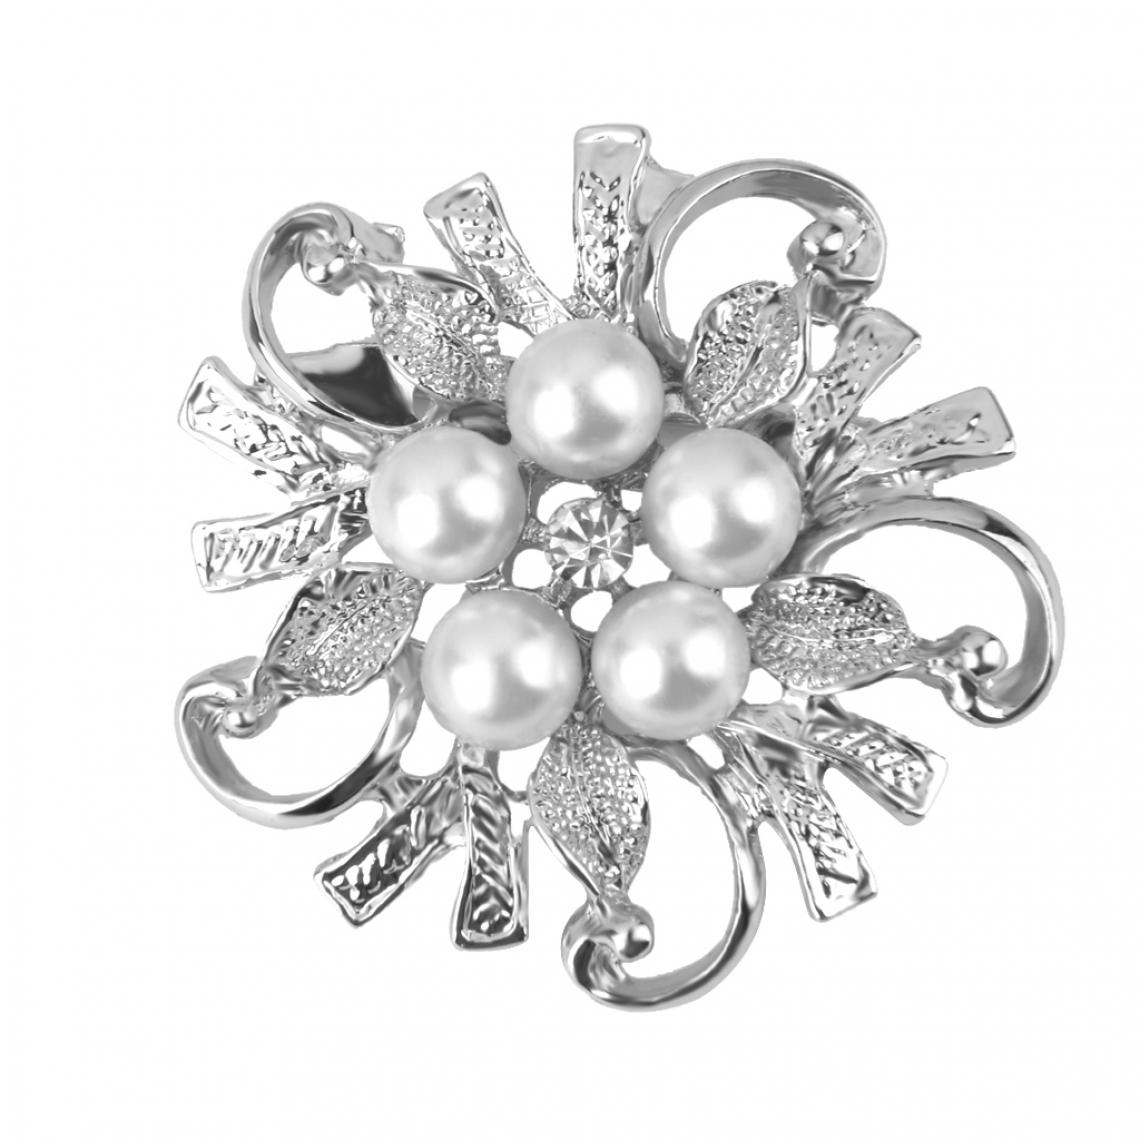 marque generique - Broche Fantaisie d'Argent Strass Perle Faux Fleur Epingle Pin's Femme Bijoux Mode - Broches de maçon